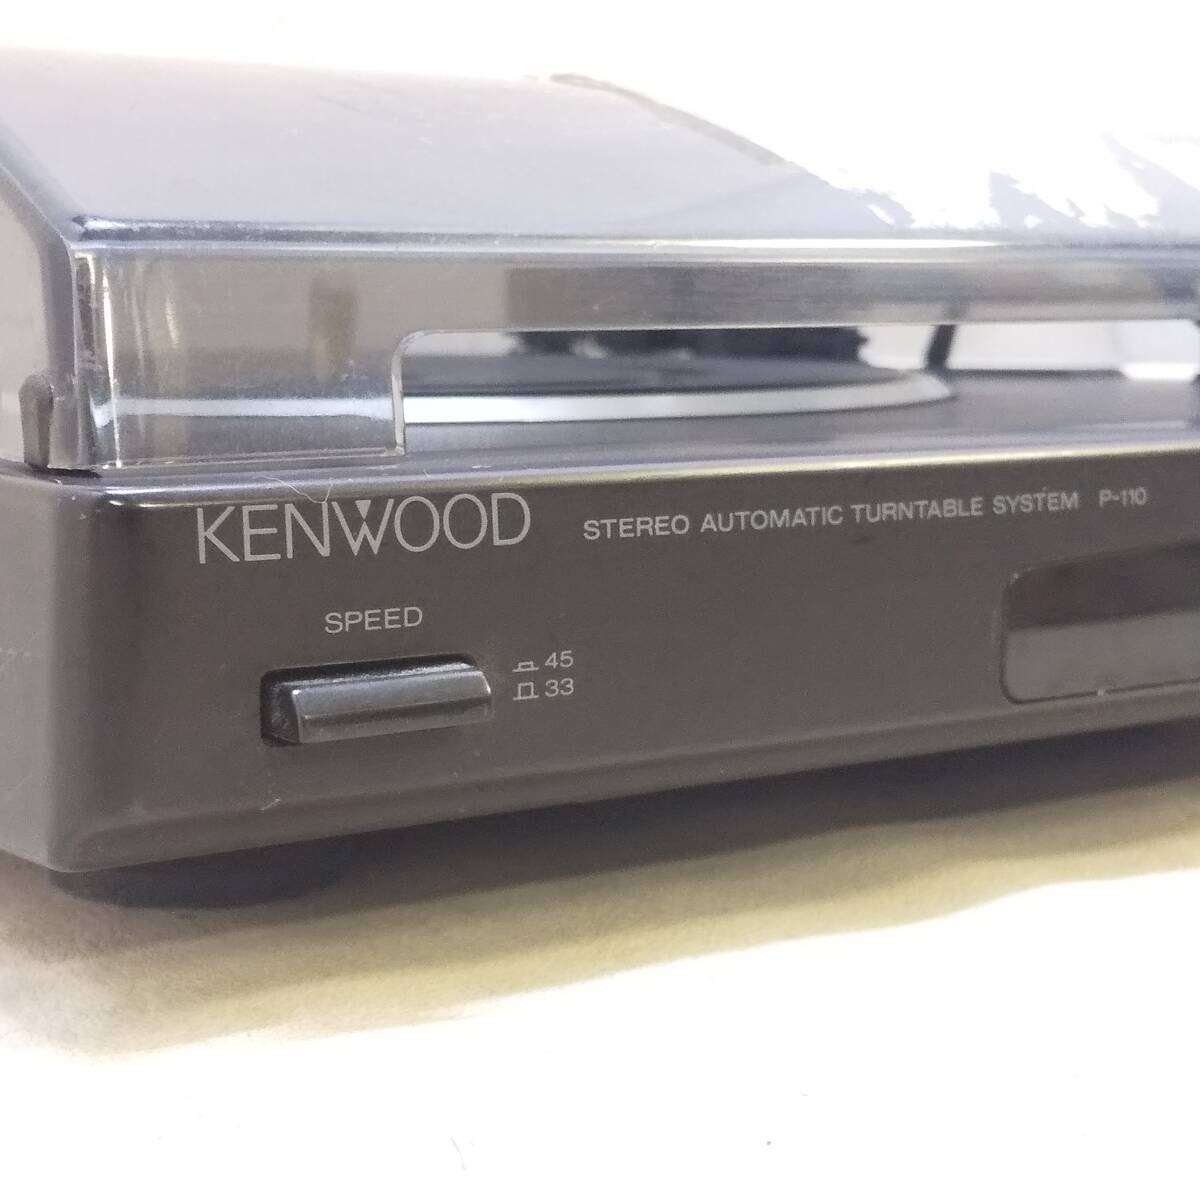 ◆KENWOOD フォノイコライザーアンプ内蔵 ベルトドライブ レコード プレーヤー P-110 ケンウッド 針欠品 回転OK 現状品◆C2522_画像7